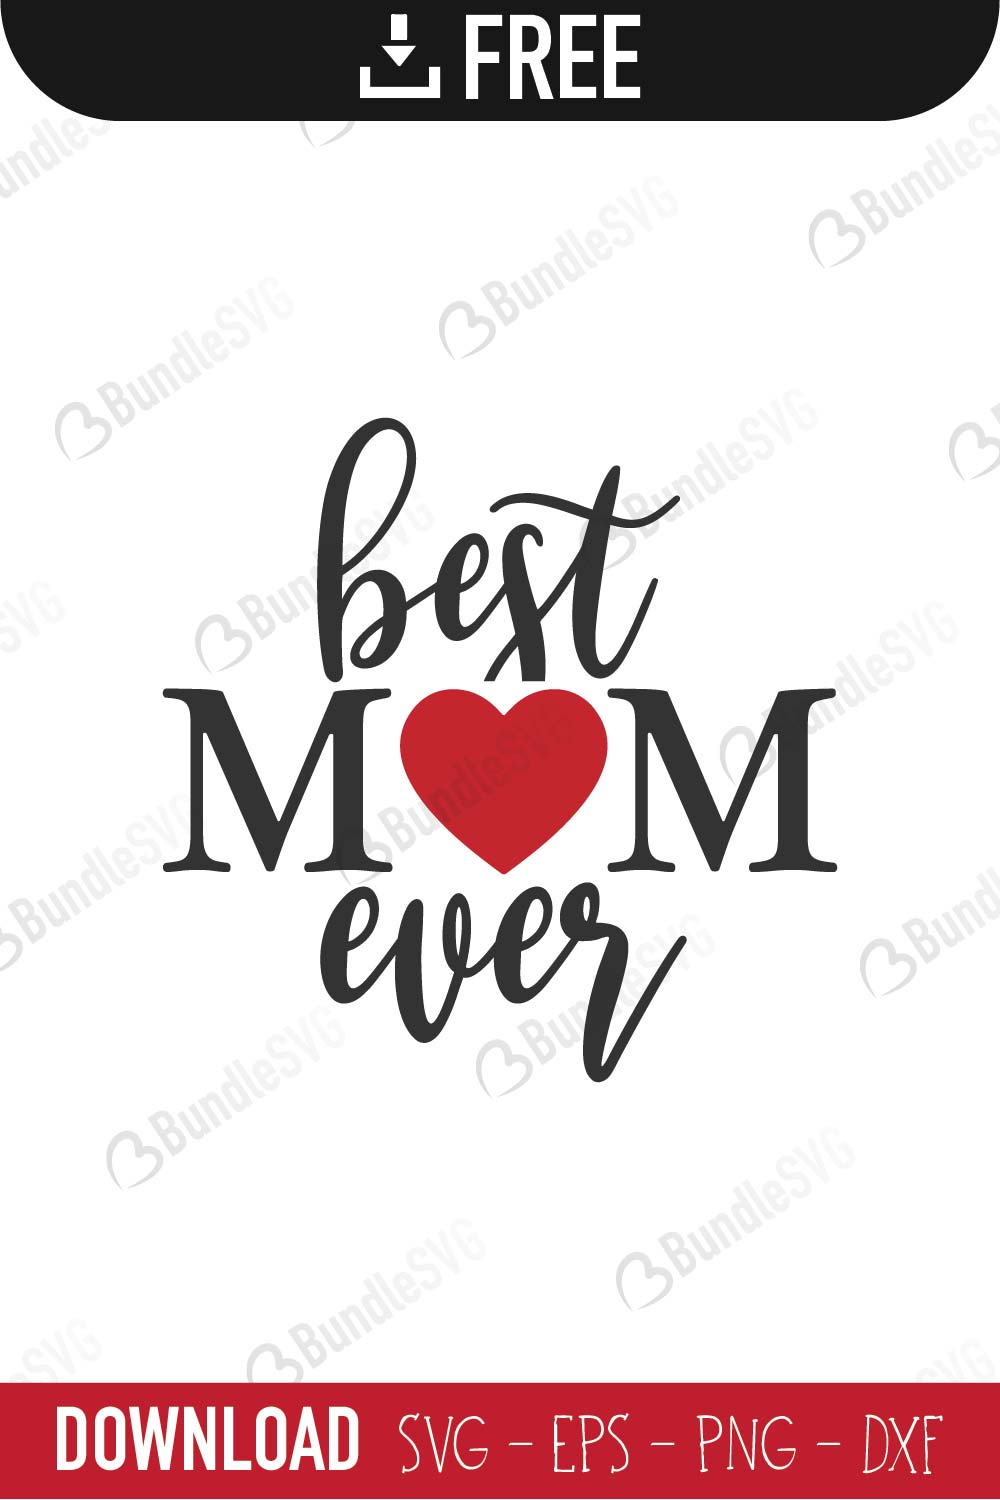 Download Best Mom Ever SVG Cut Files Free Download | BundleSVG